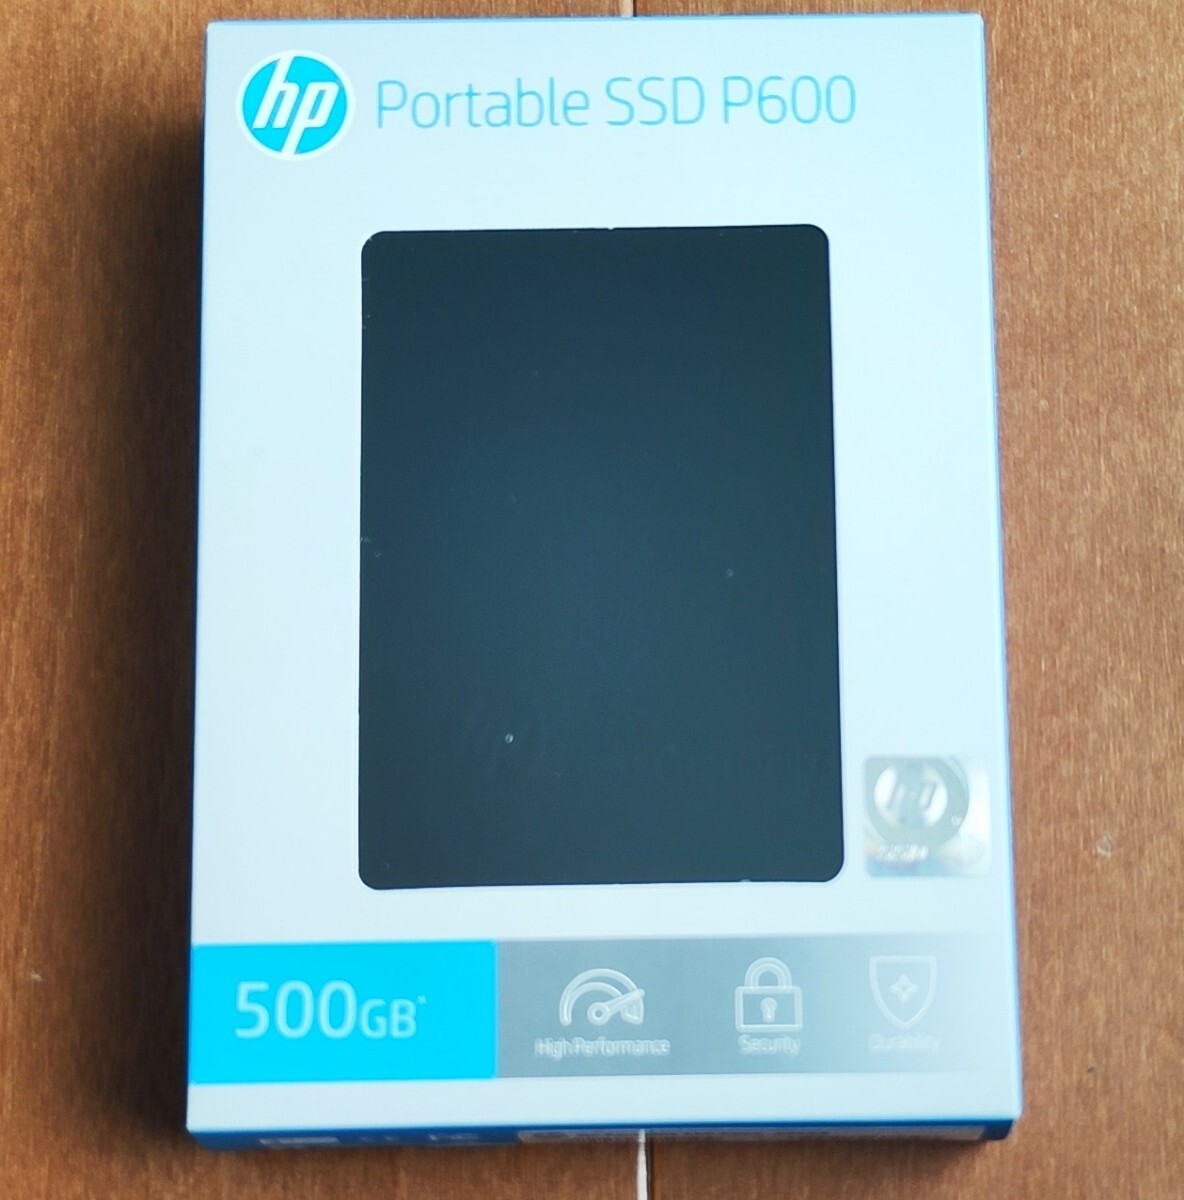 新品未開封品 500GB ポータブルSSD HP P600 USB Type-C 変換アダプタ付き_画像1